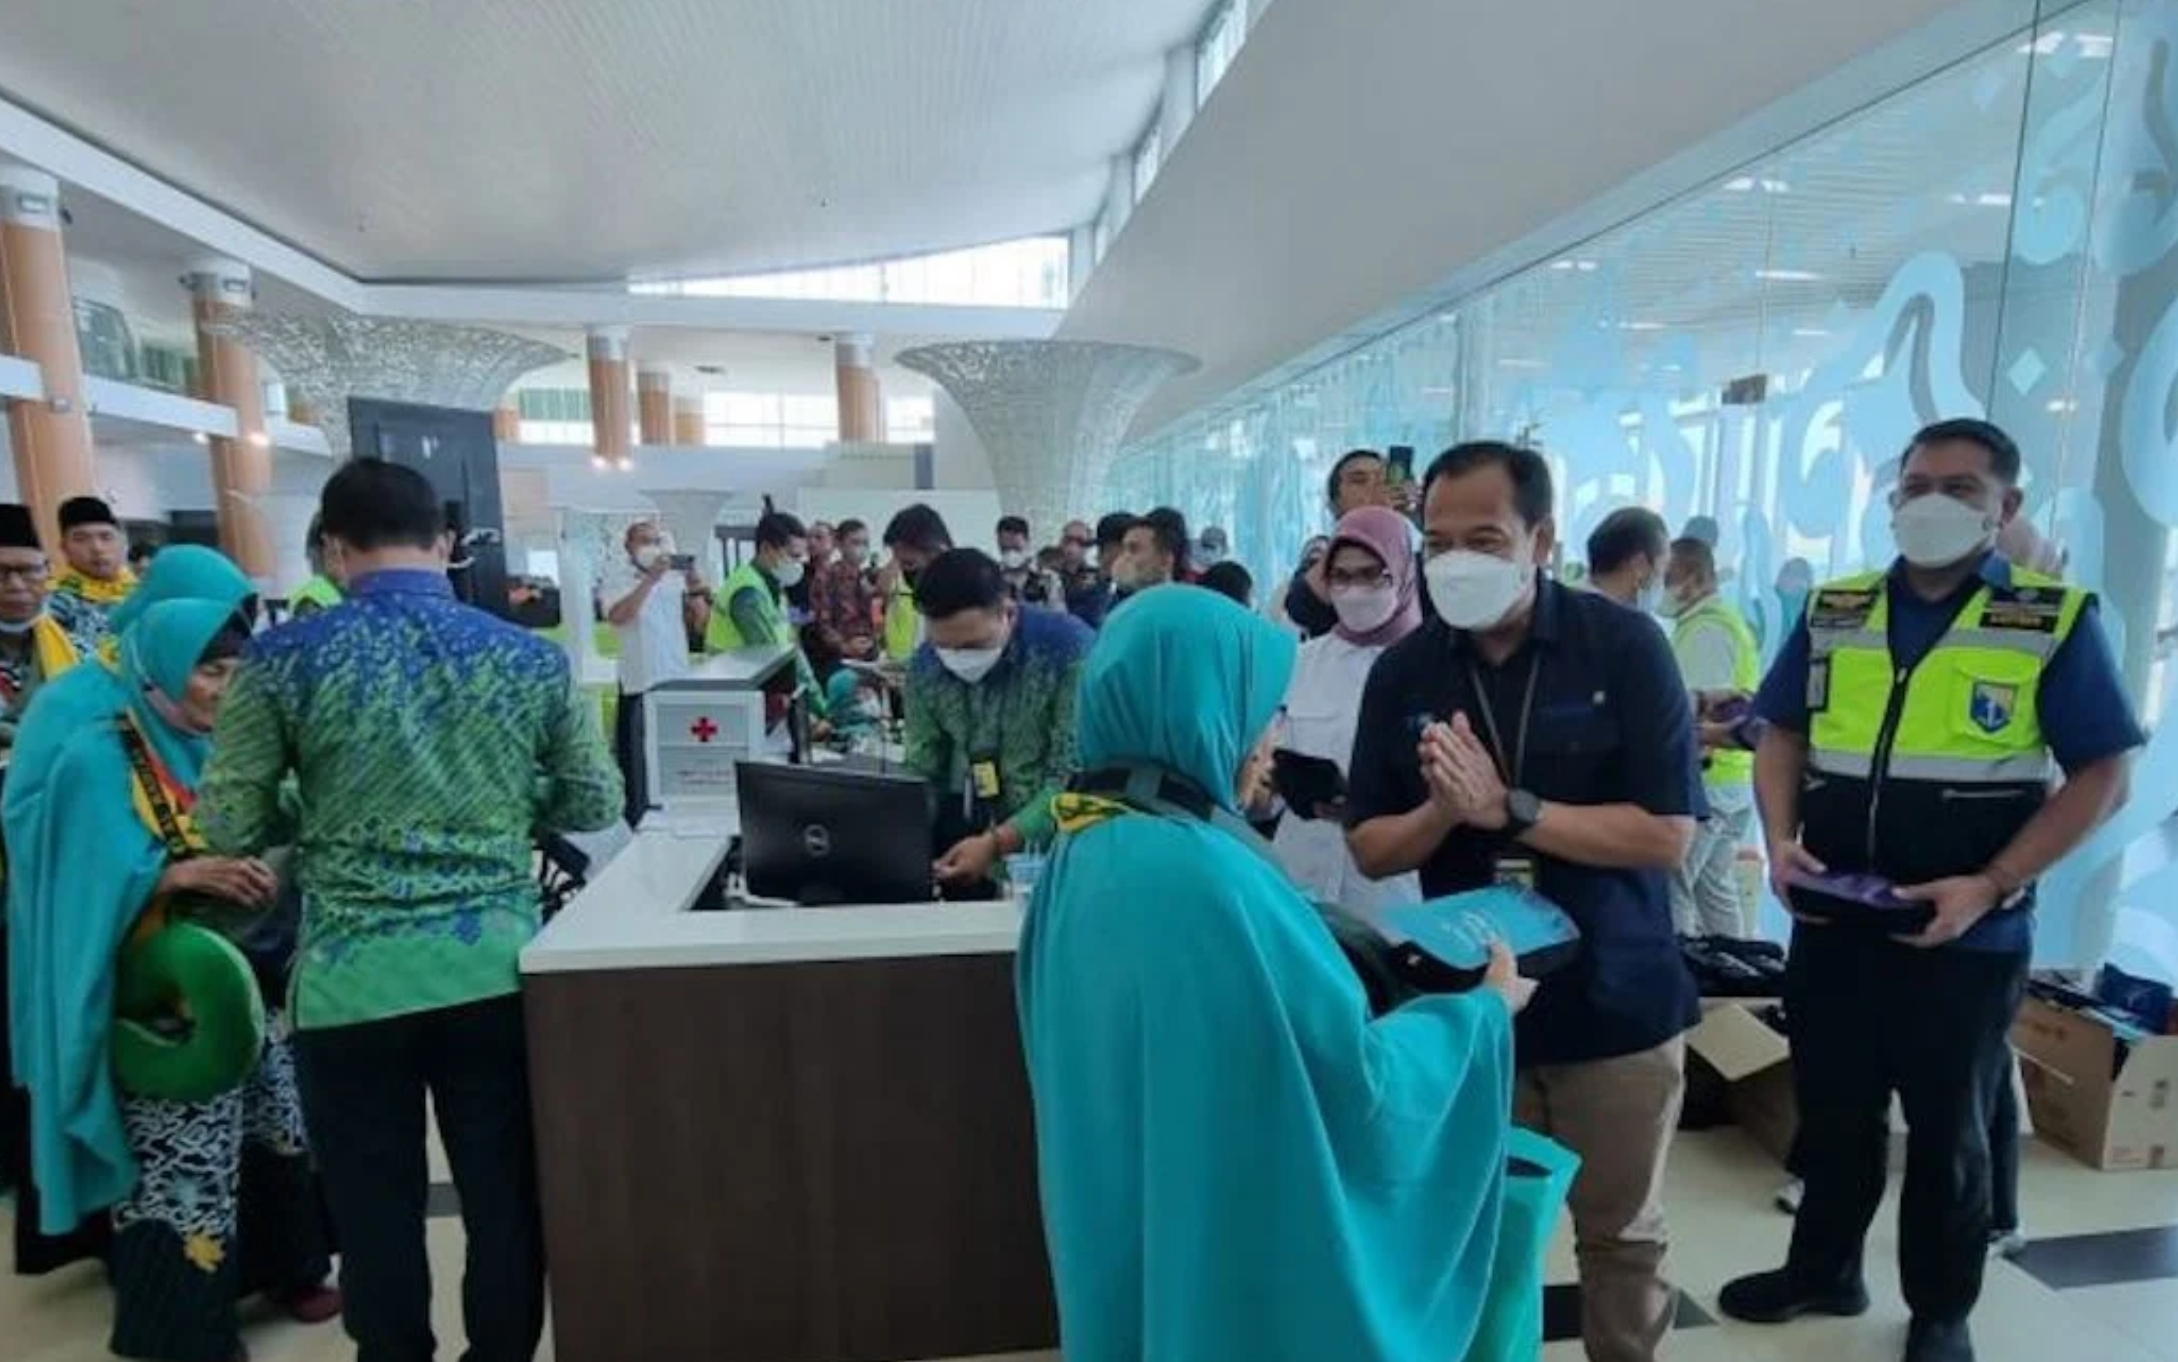 Turis Malaysia Berdatangan lewat Bandara Kertajati, Jangan Cuma Bandung, Kota Cirebon Juga Ingin Dimampirin